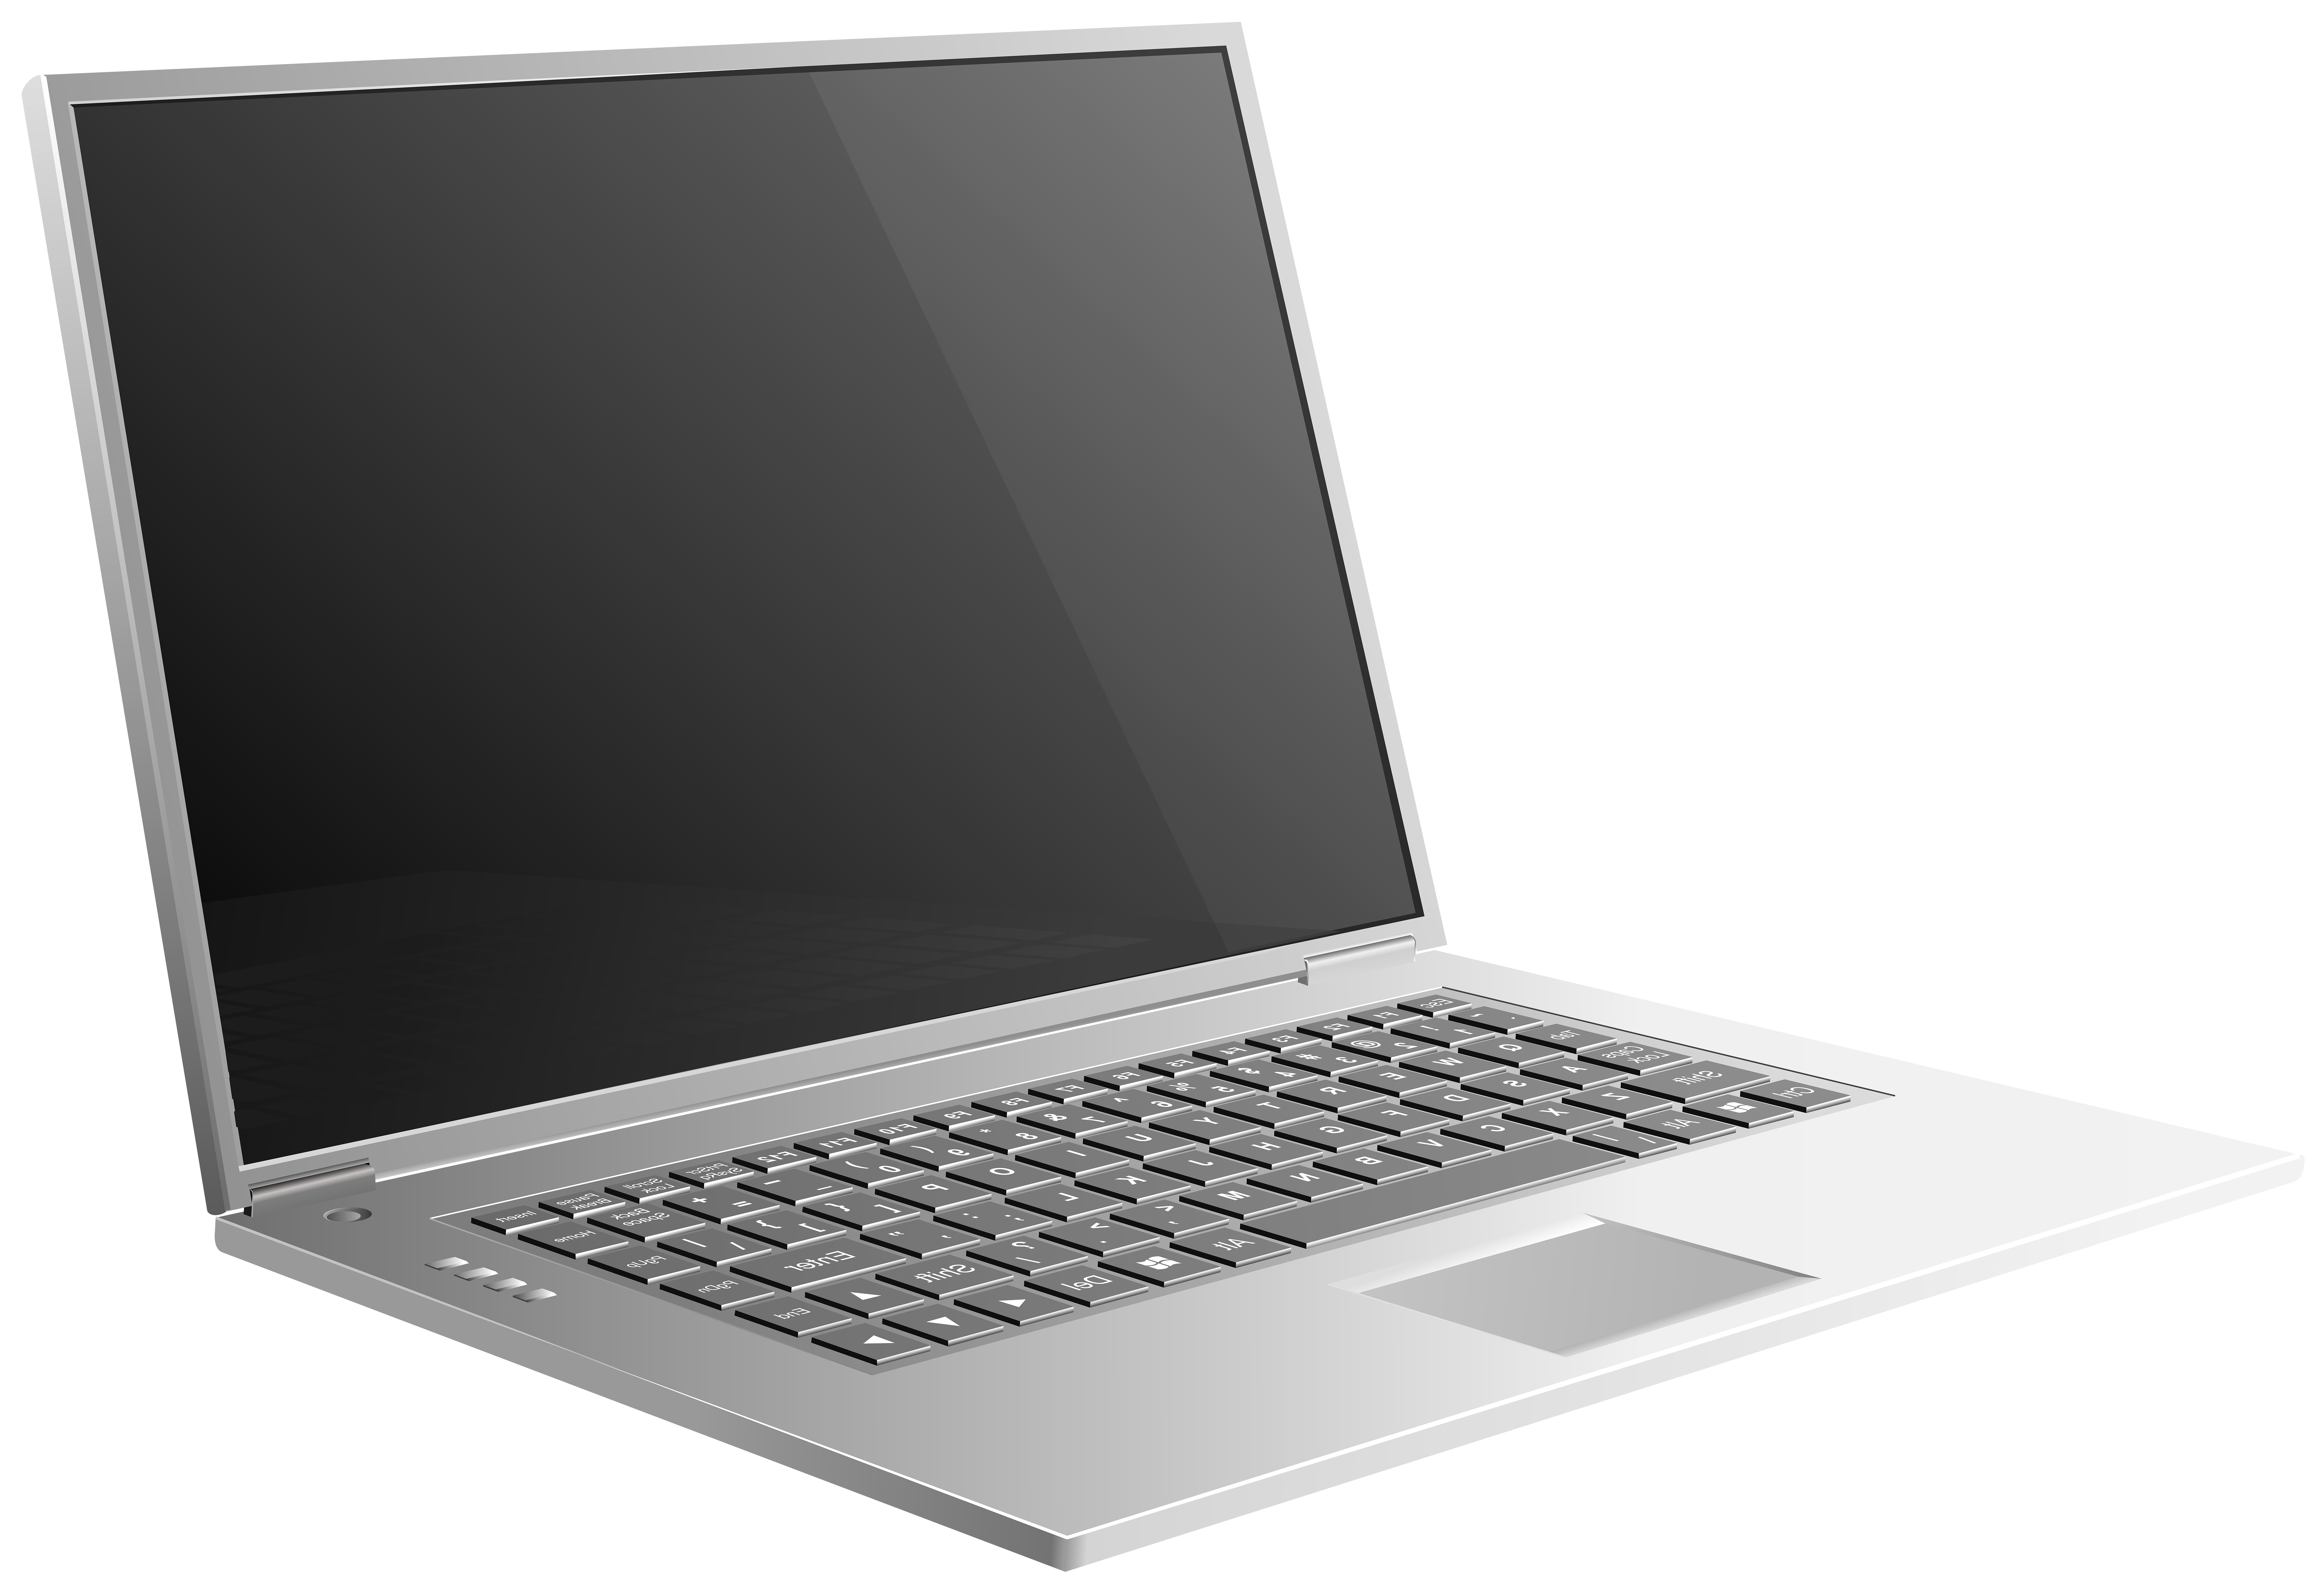 Png Laptop - KibrisPDR